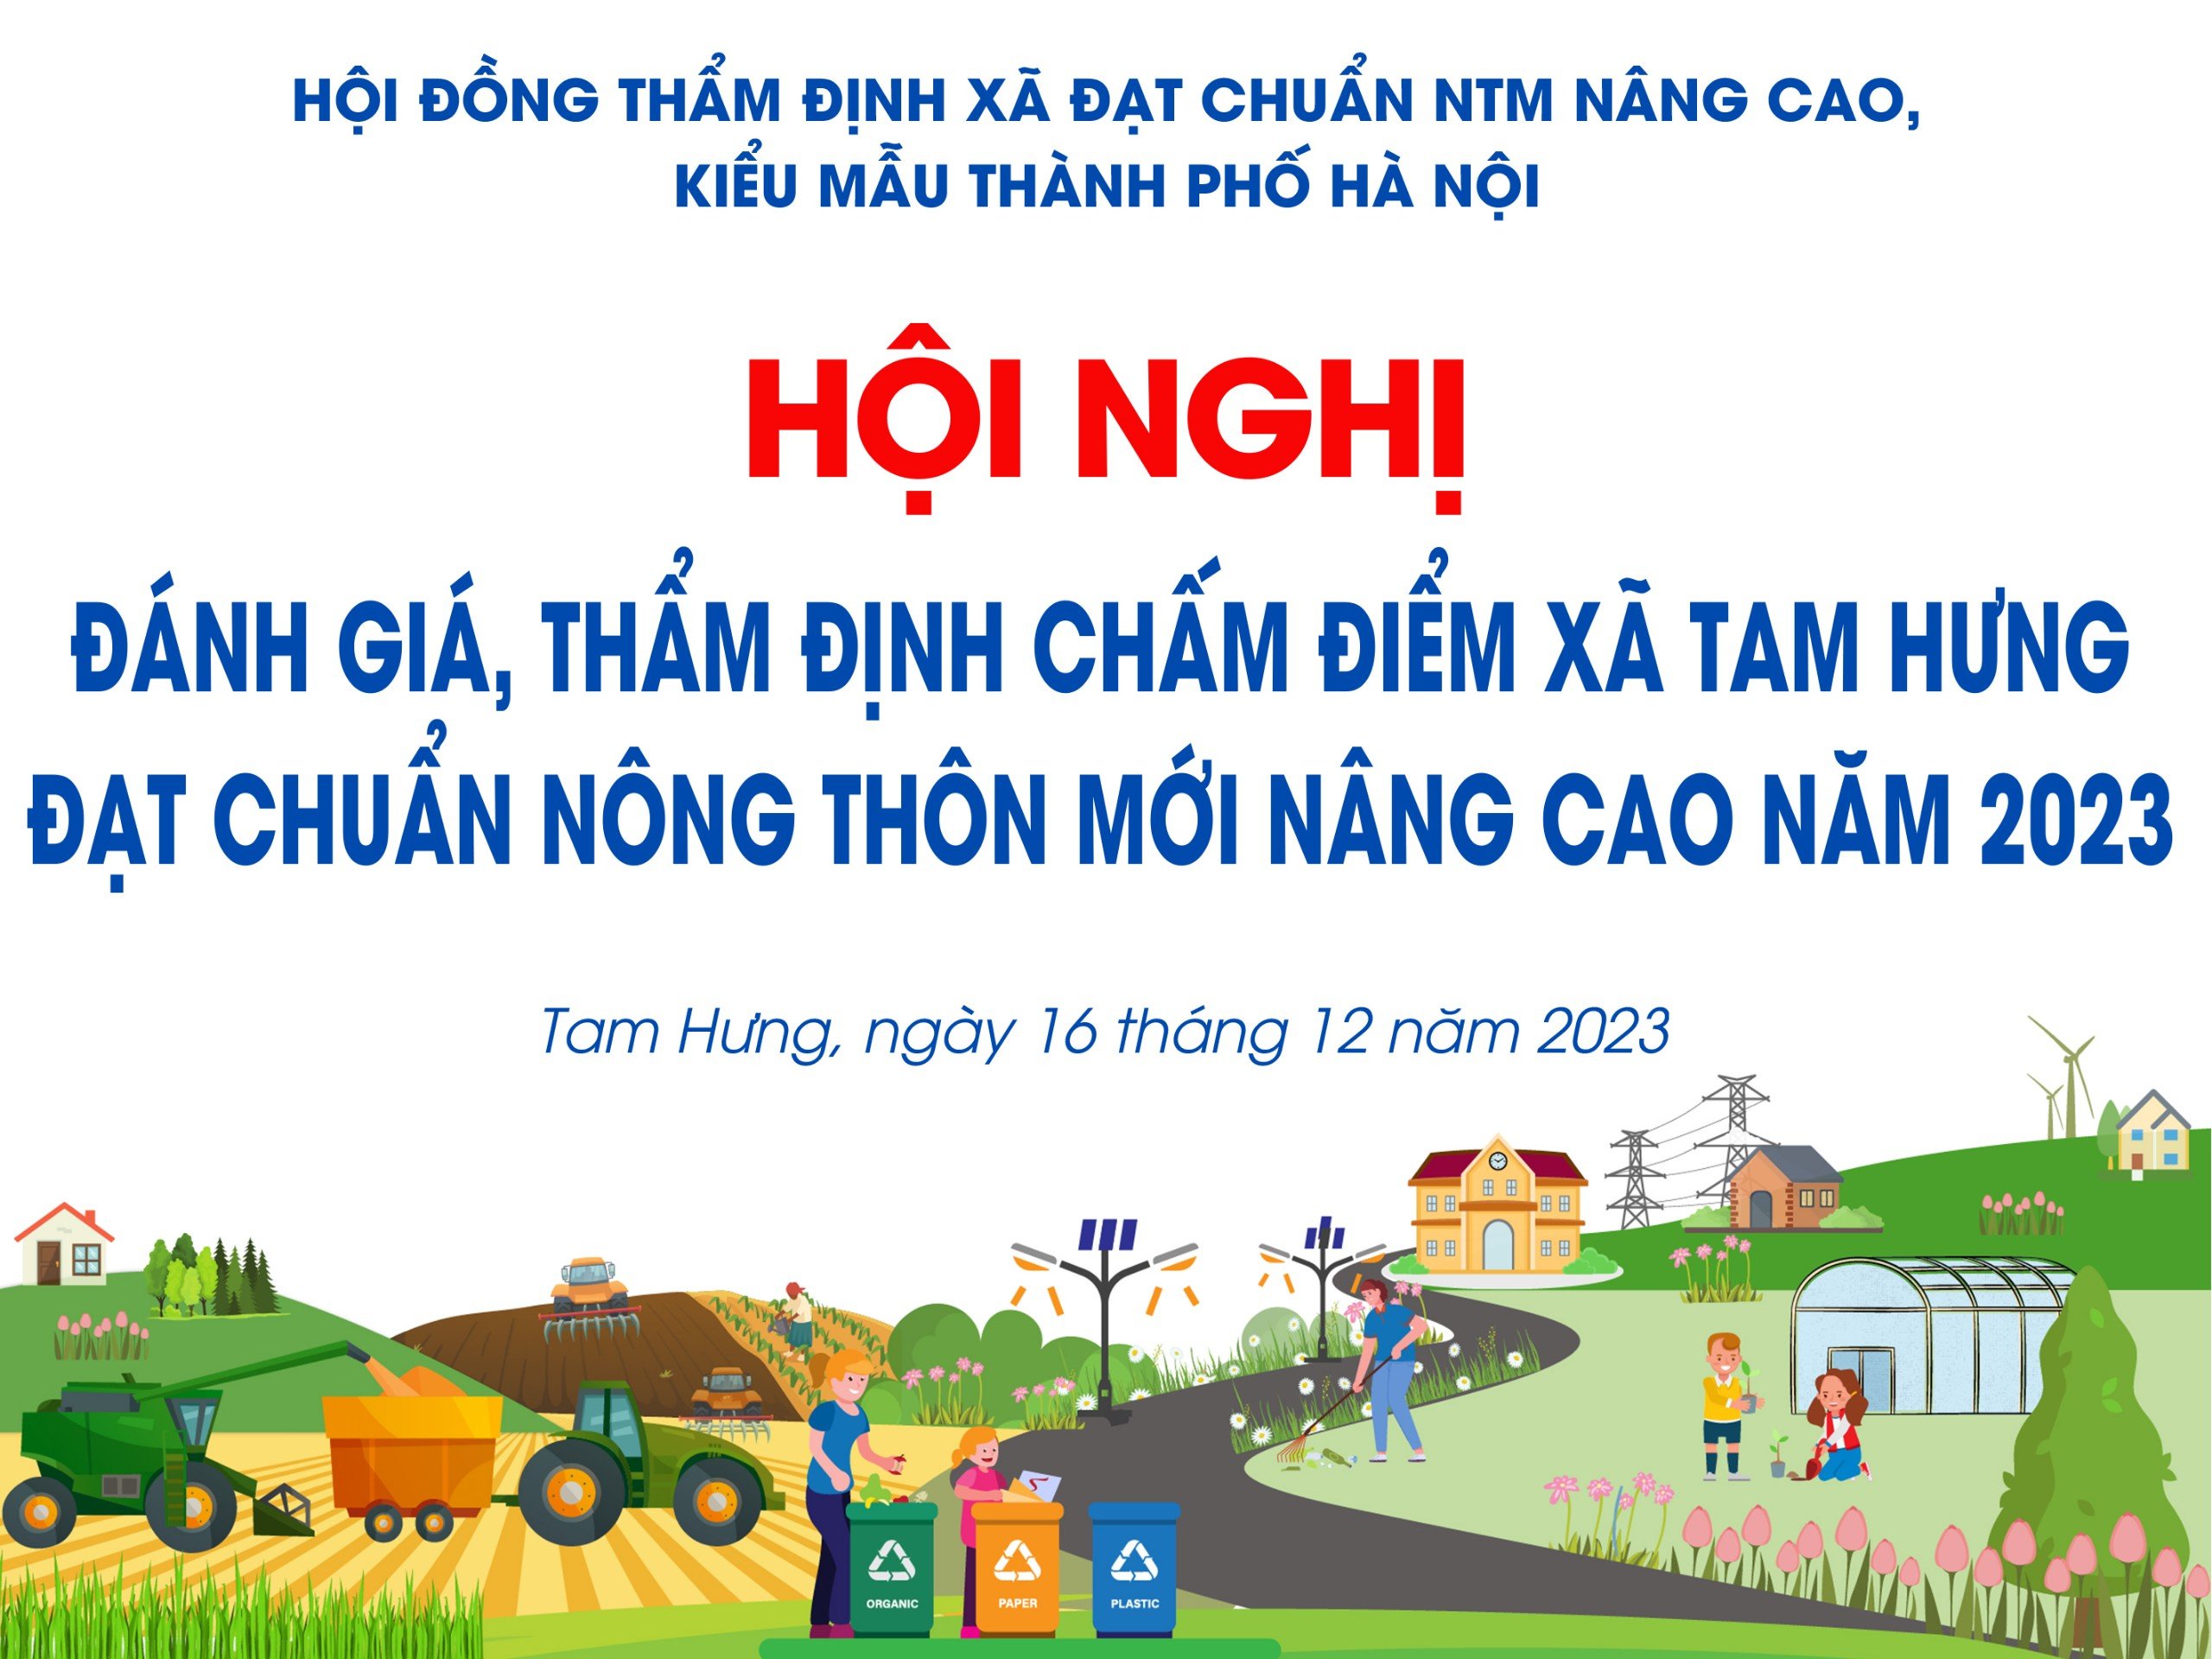 Thành phố đánh giá, thẩm định chấm điểm đạt chuẩn NTM nâng cao tại xã Tam Hưng.